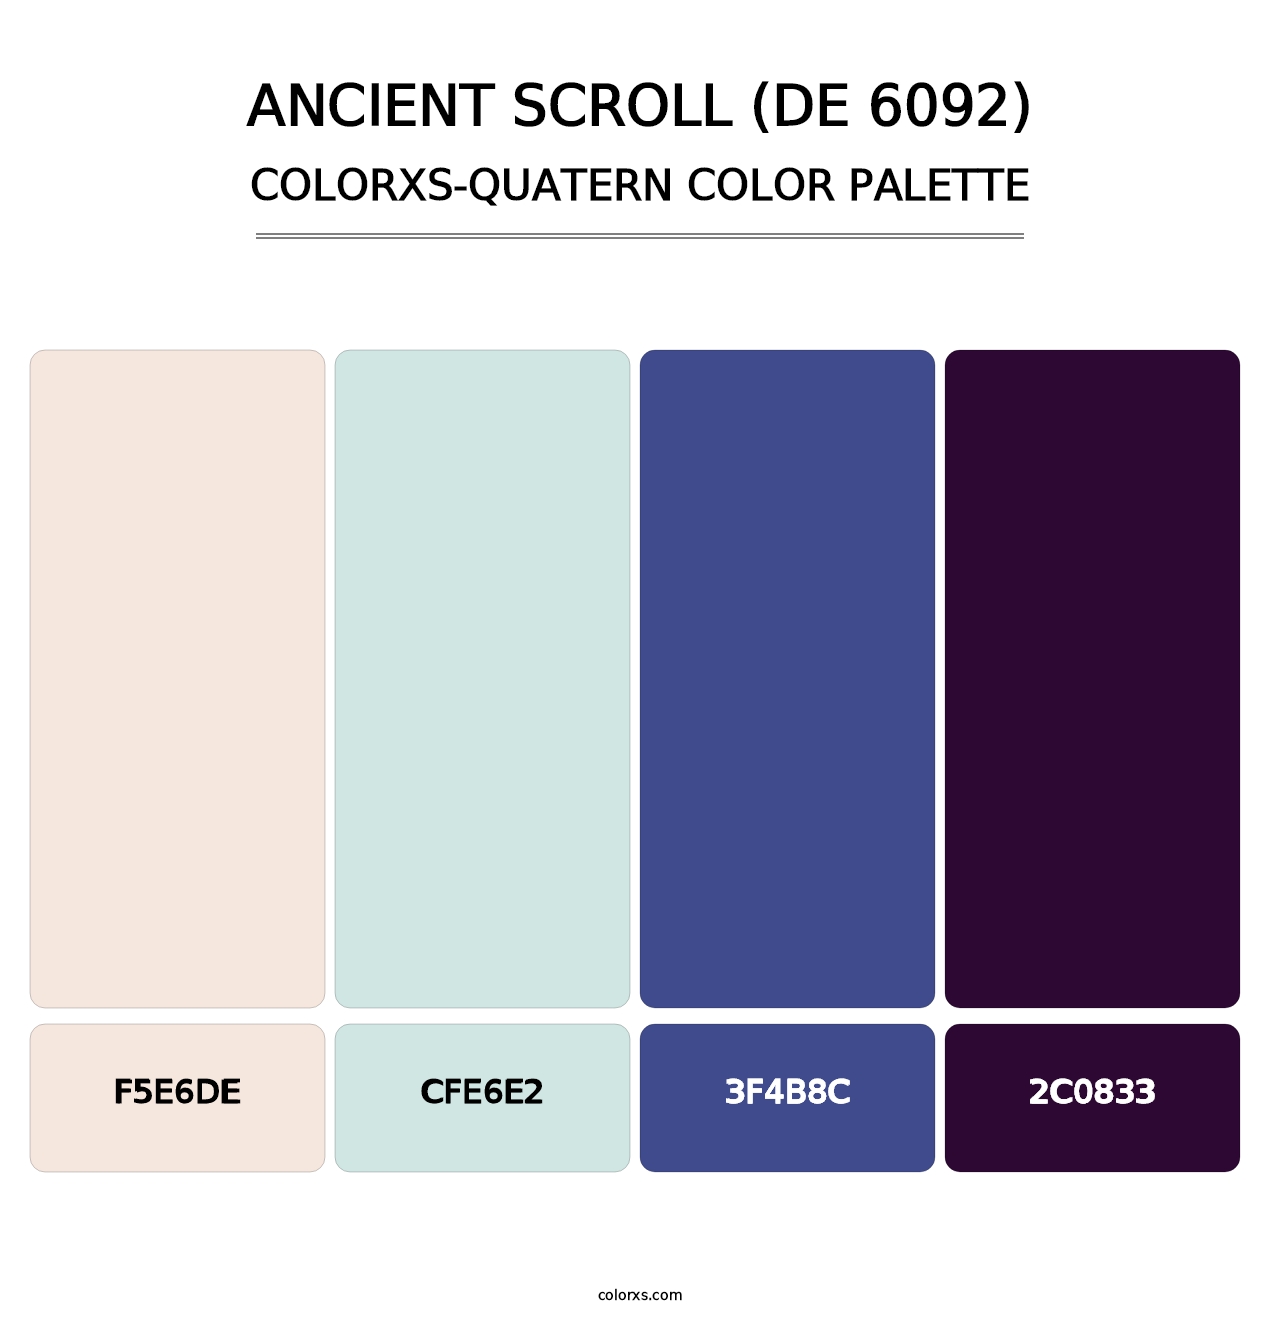 Ancient Scroll (DE 6092) - Colorxs Quatern Palette